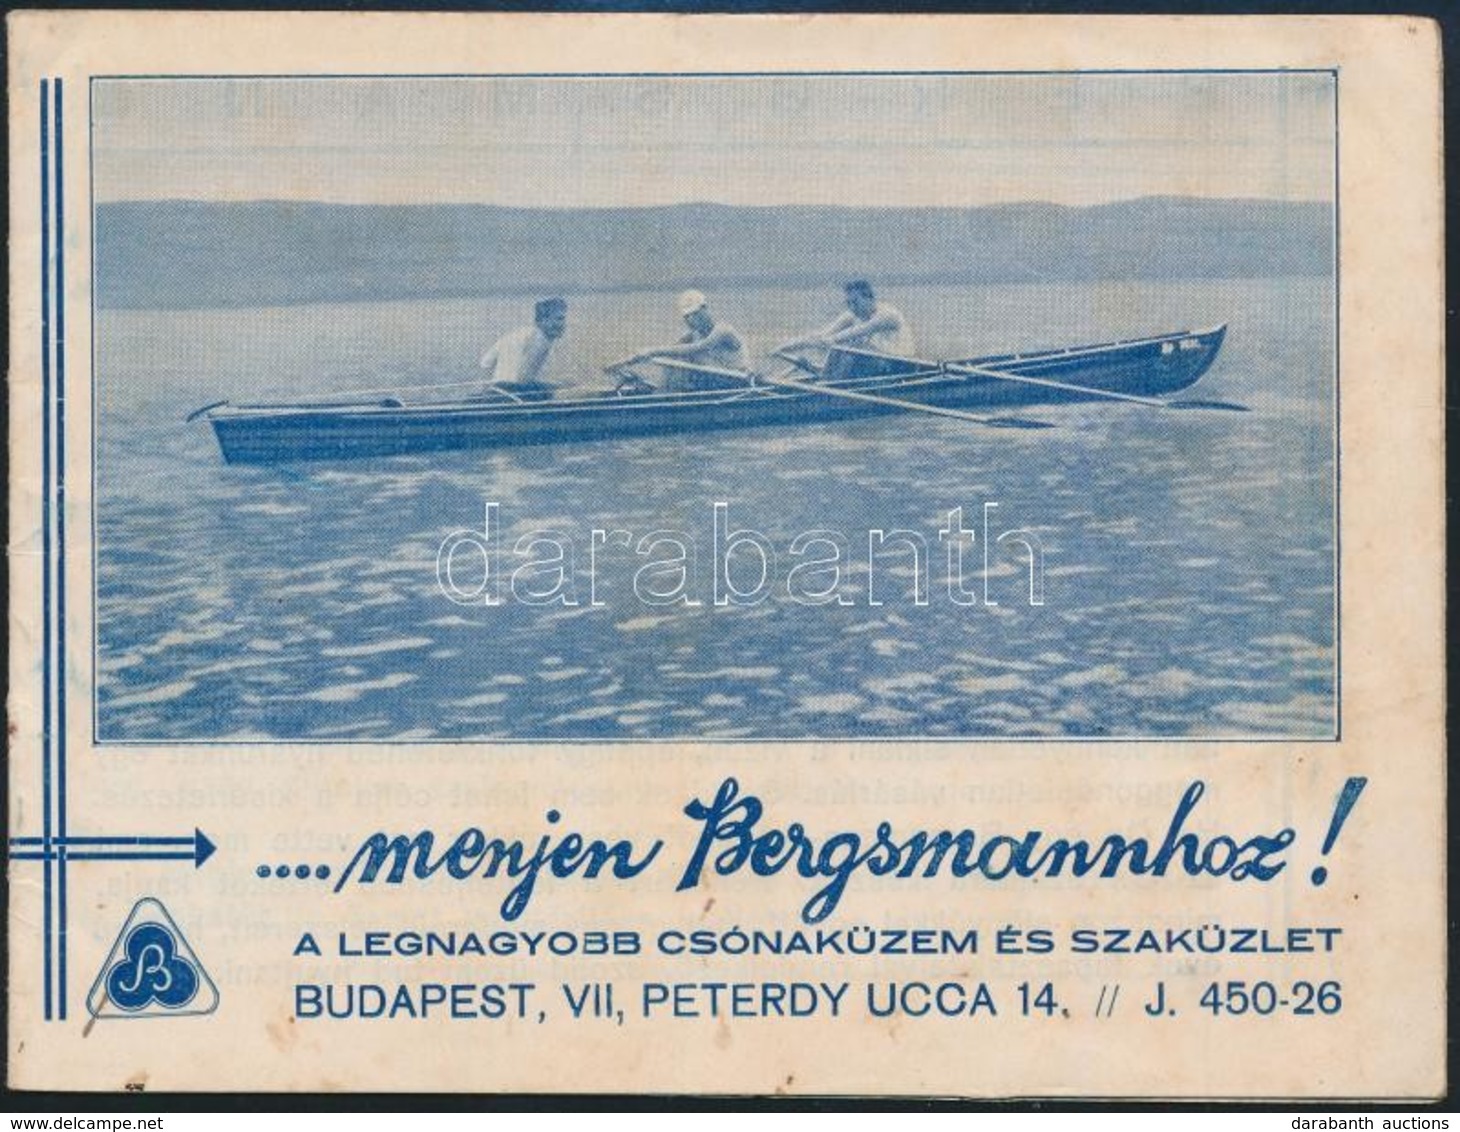 Bergsmann Csónaküzem és Szaküzlet árjegyzék - Advertising